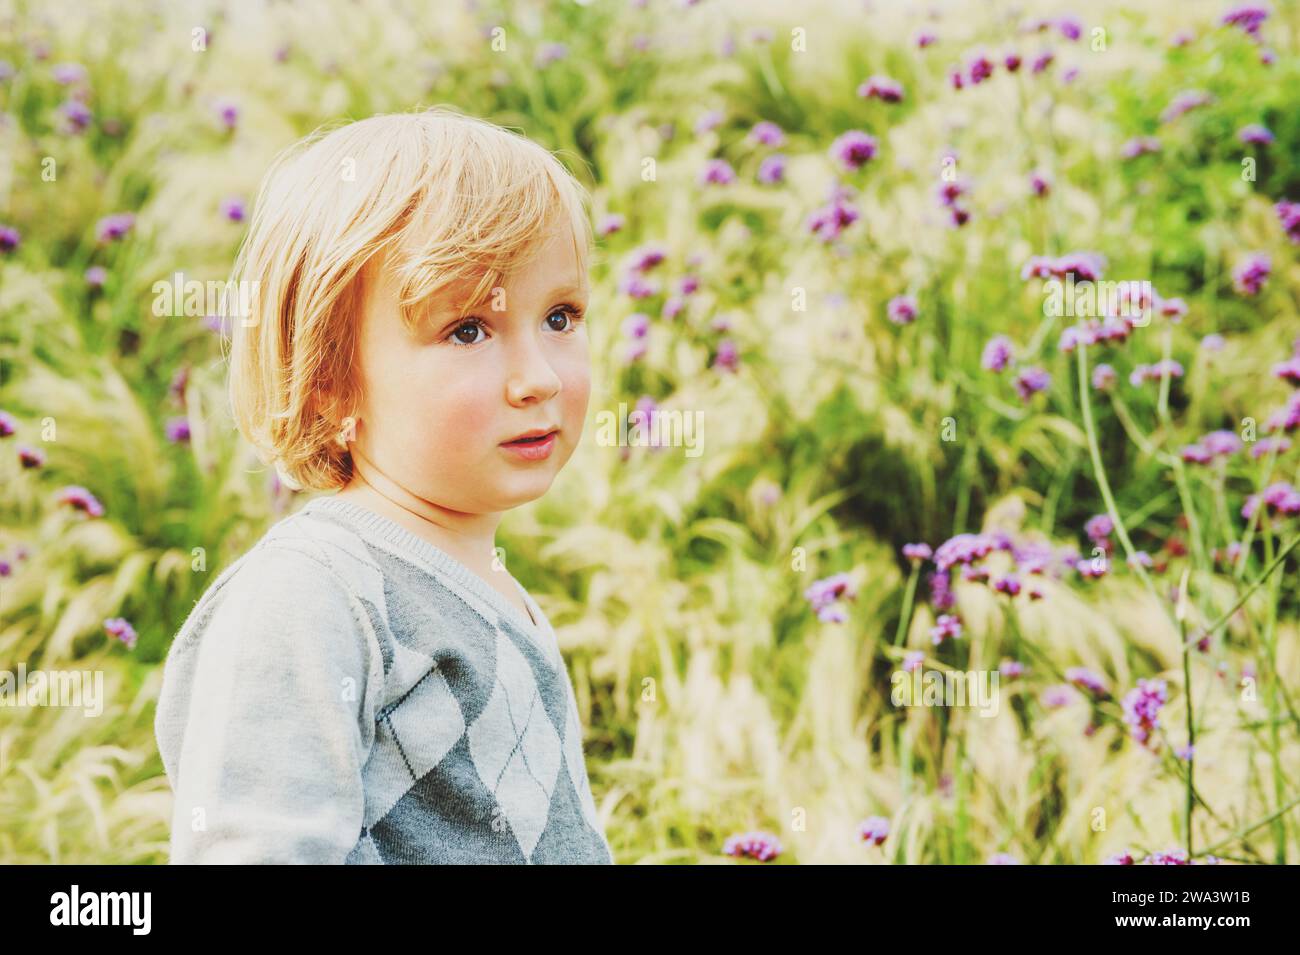 Adorable niño rubio jugando en un jardín, usando jersey gris Foto de stock